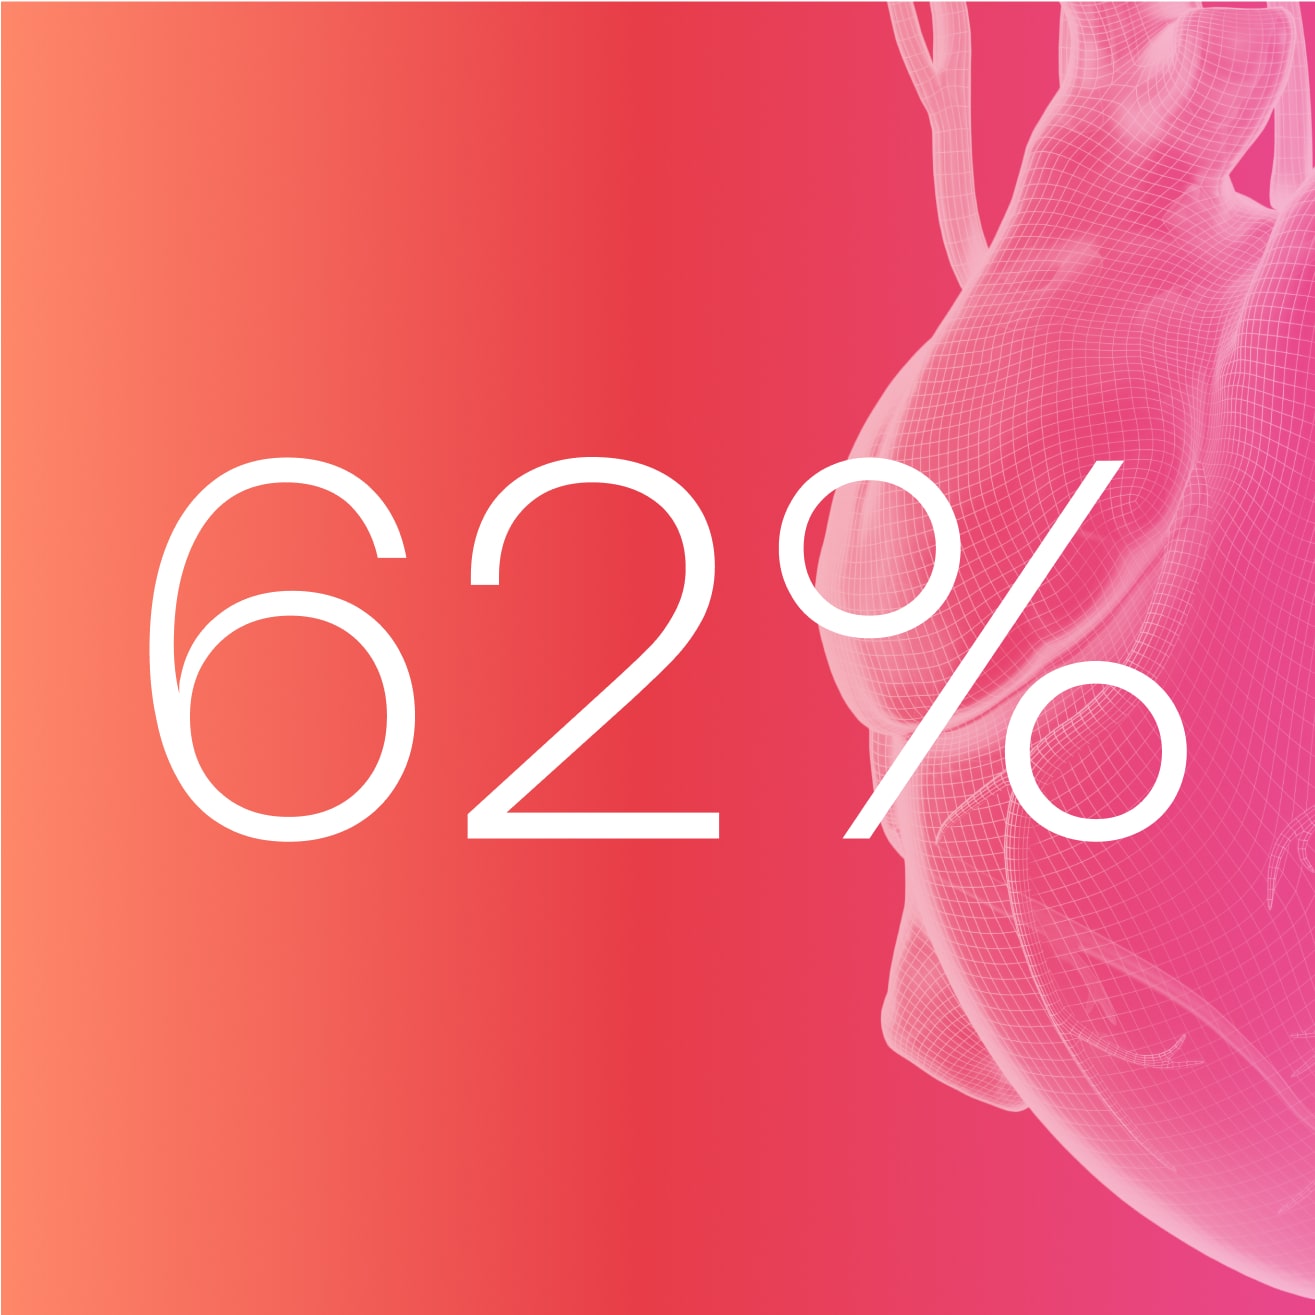 El 62 % de las mujeres hipertensas desconocen que padecen de hipertensión⁵ Image